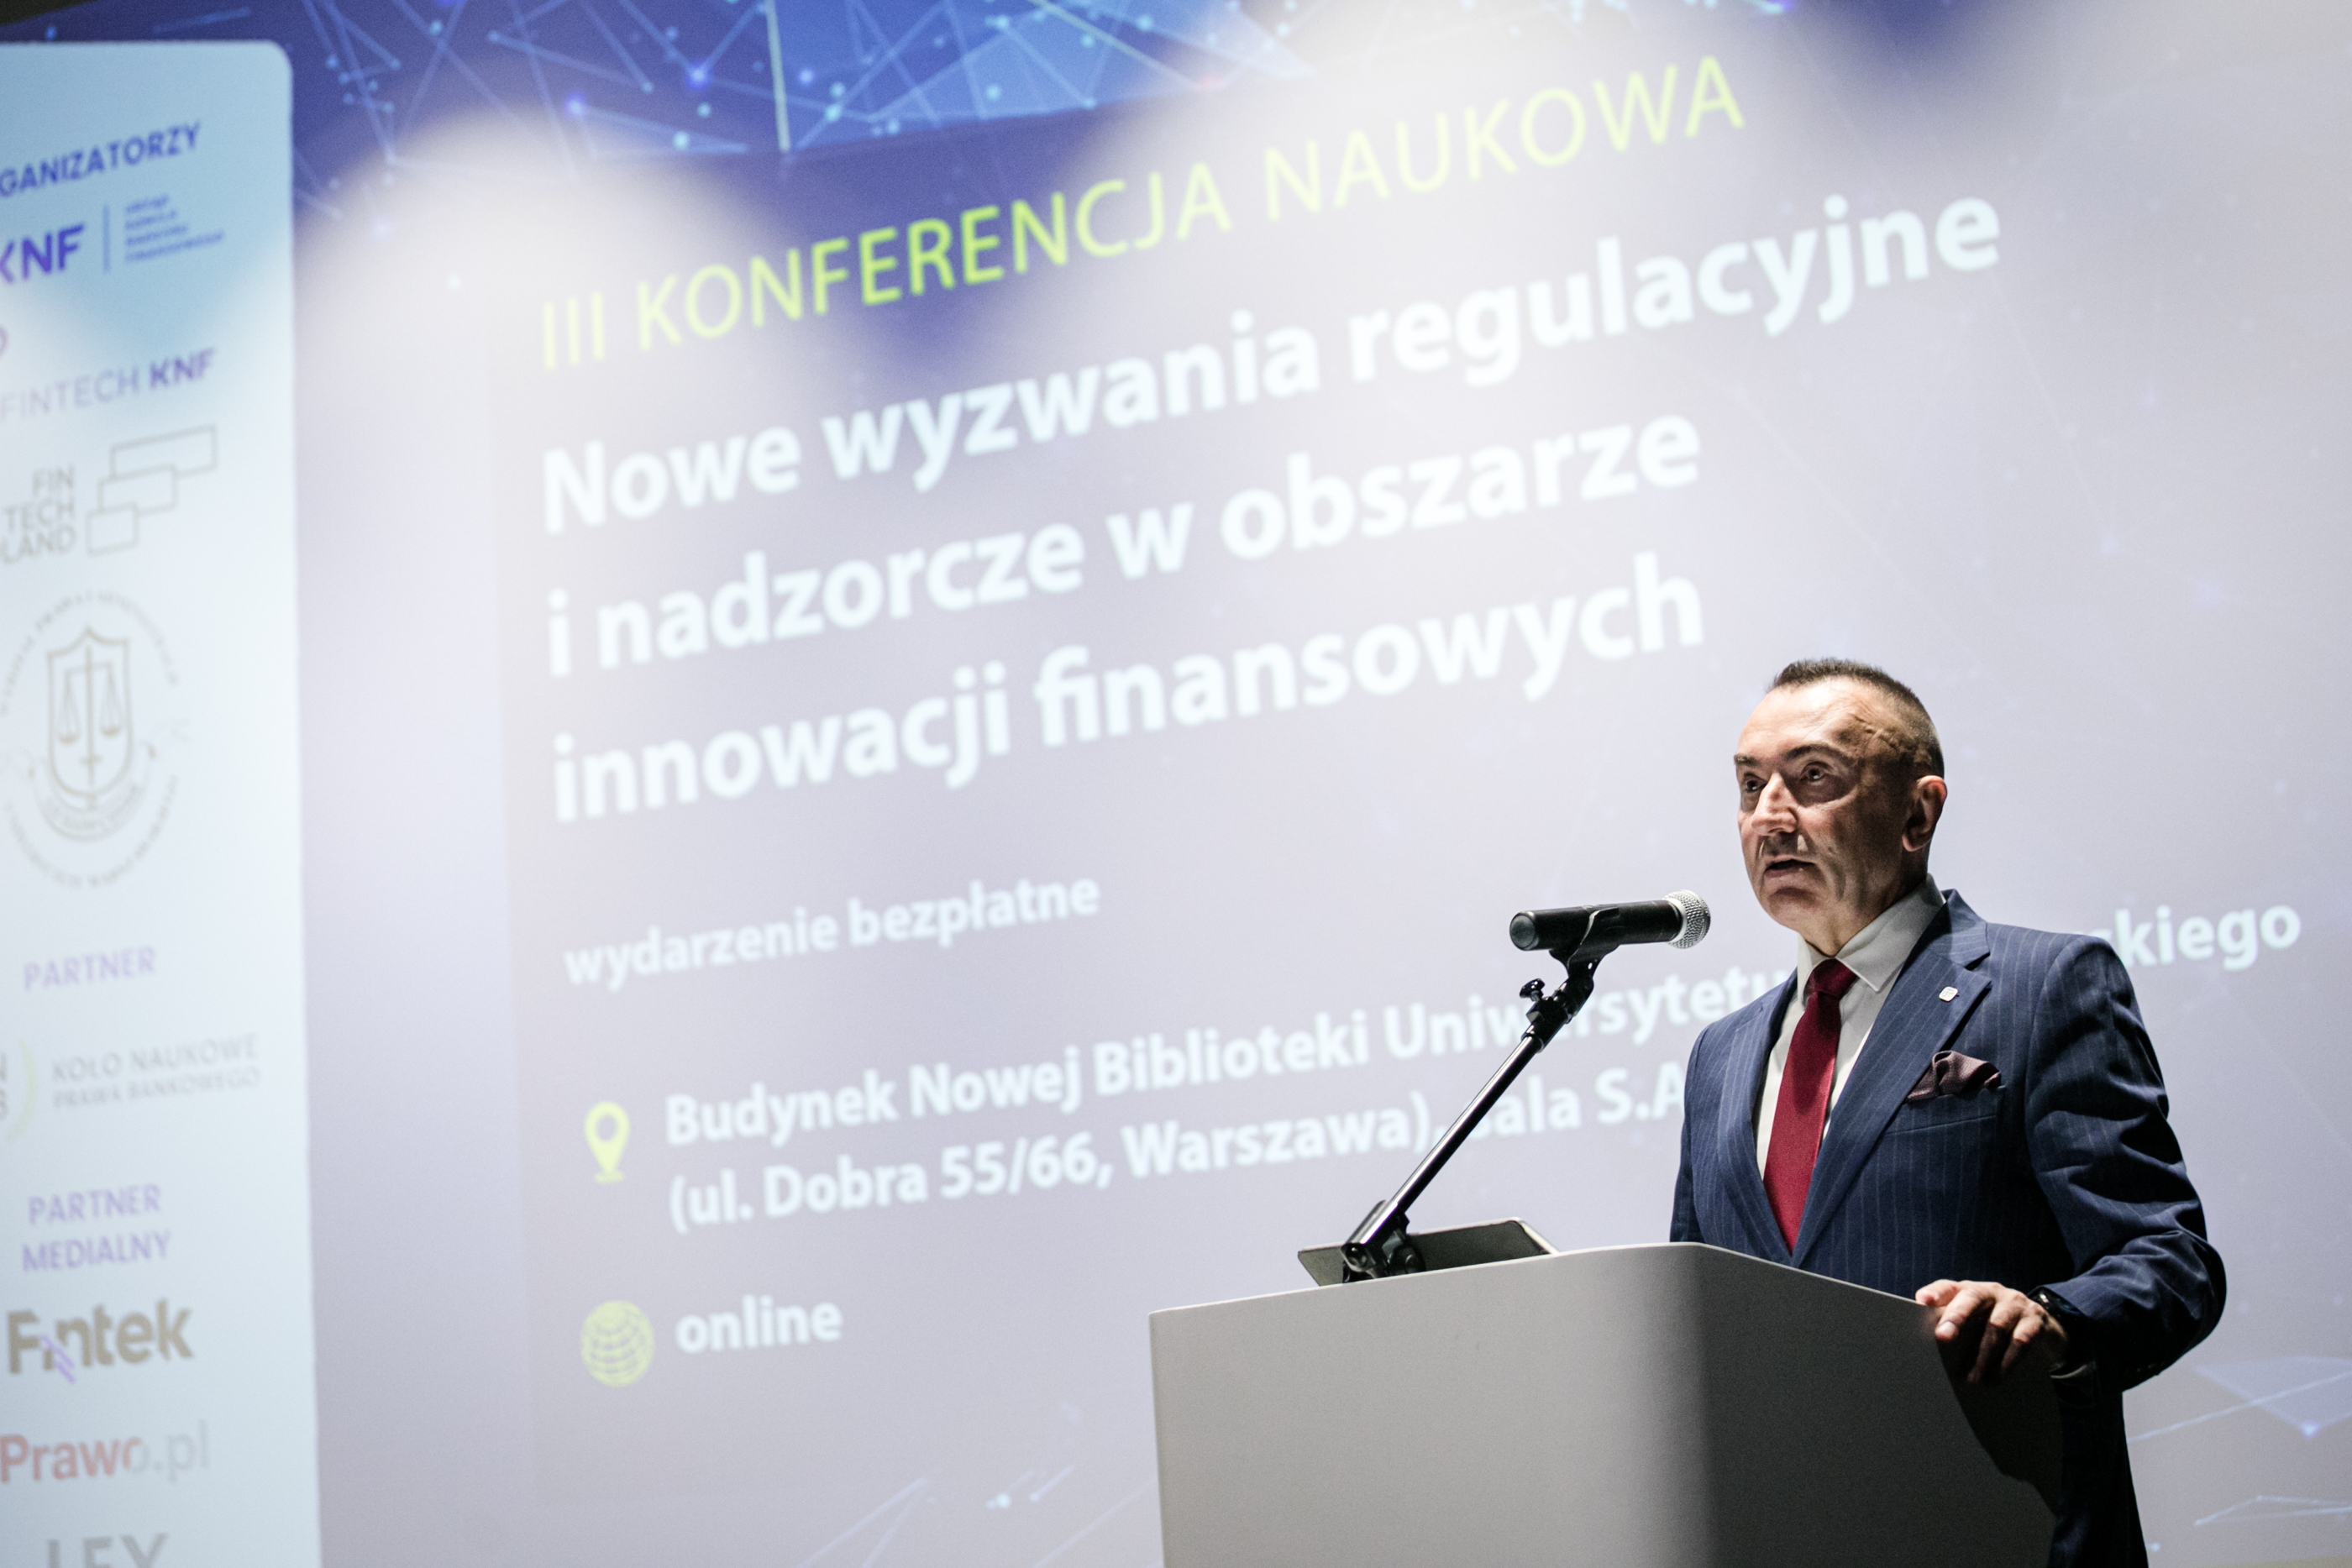 Podsumowanie - III Konferencja Naukowa - nowe wyzwania regulacyjne i nadzorcze w obszarze innowacji finansowych